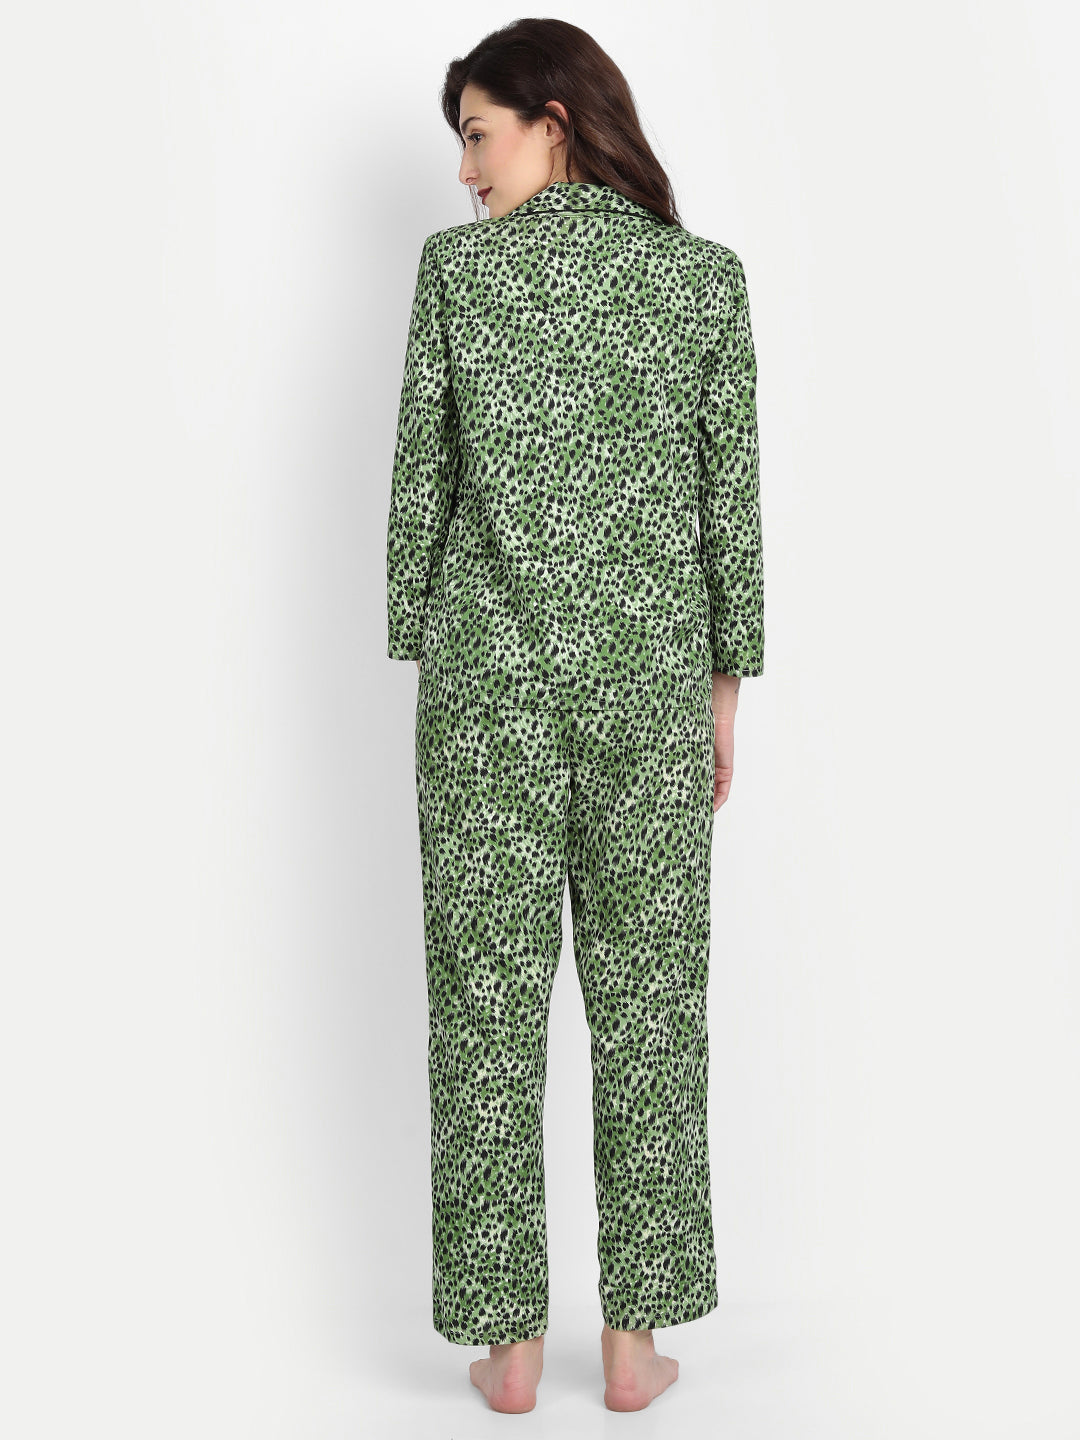 Women Black & Green Animal Print Polyester Pyjama & Shirt Nightsuit Set